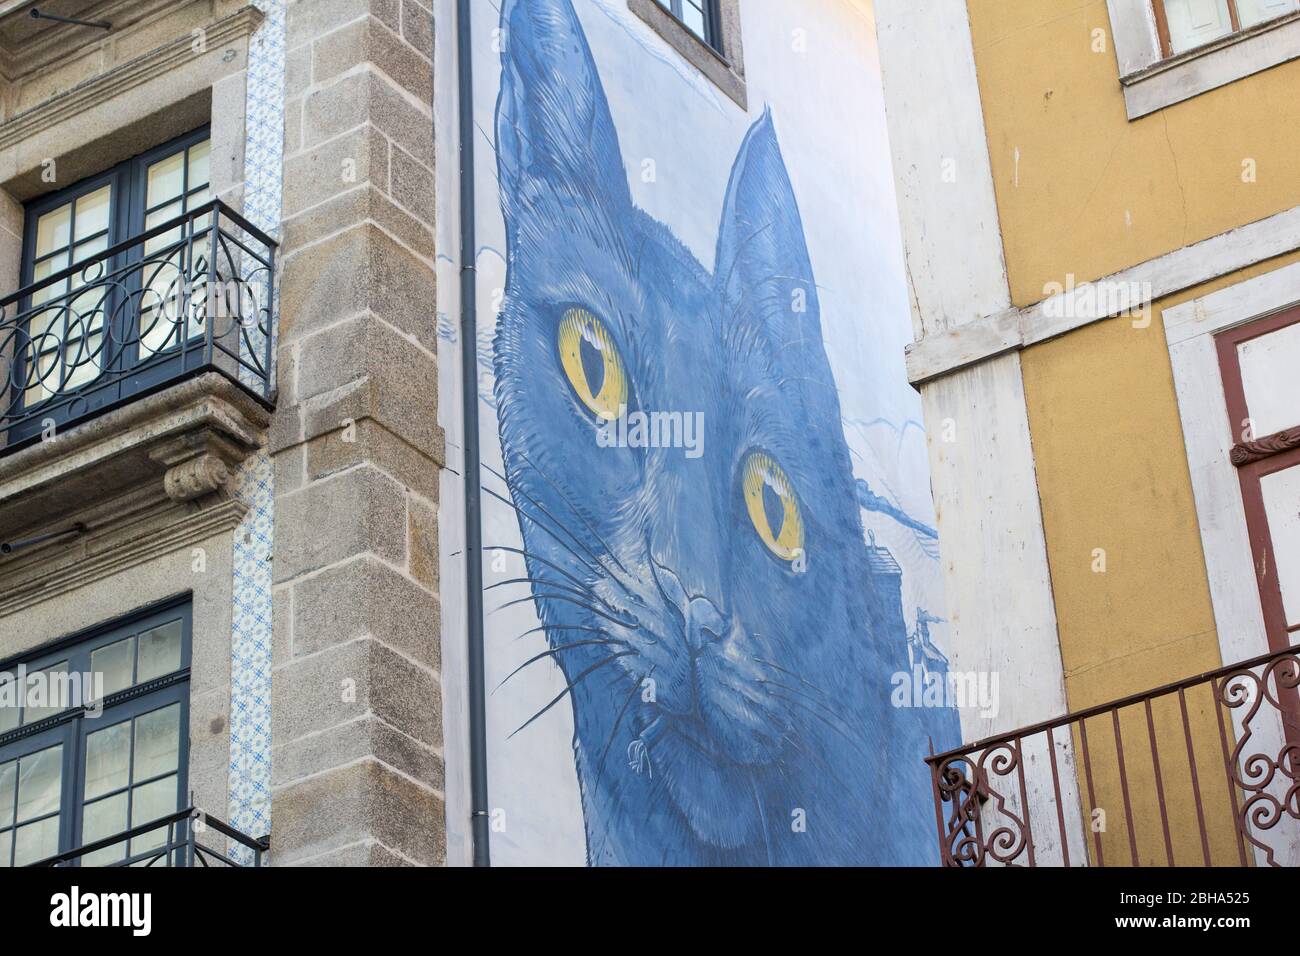 Murale, chat bleu entre les maisons Banque D'Images